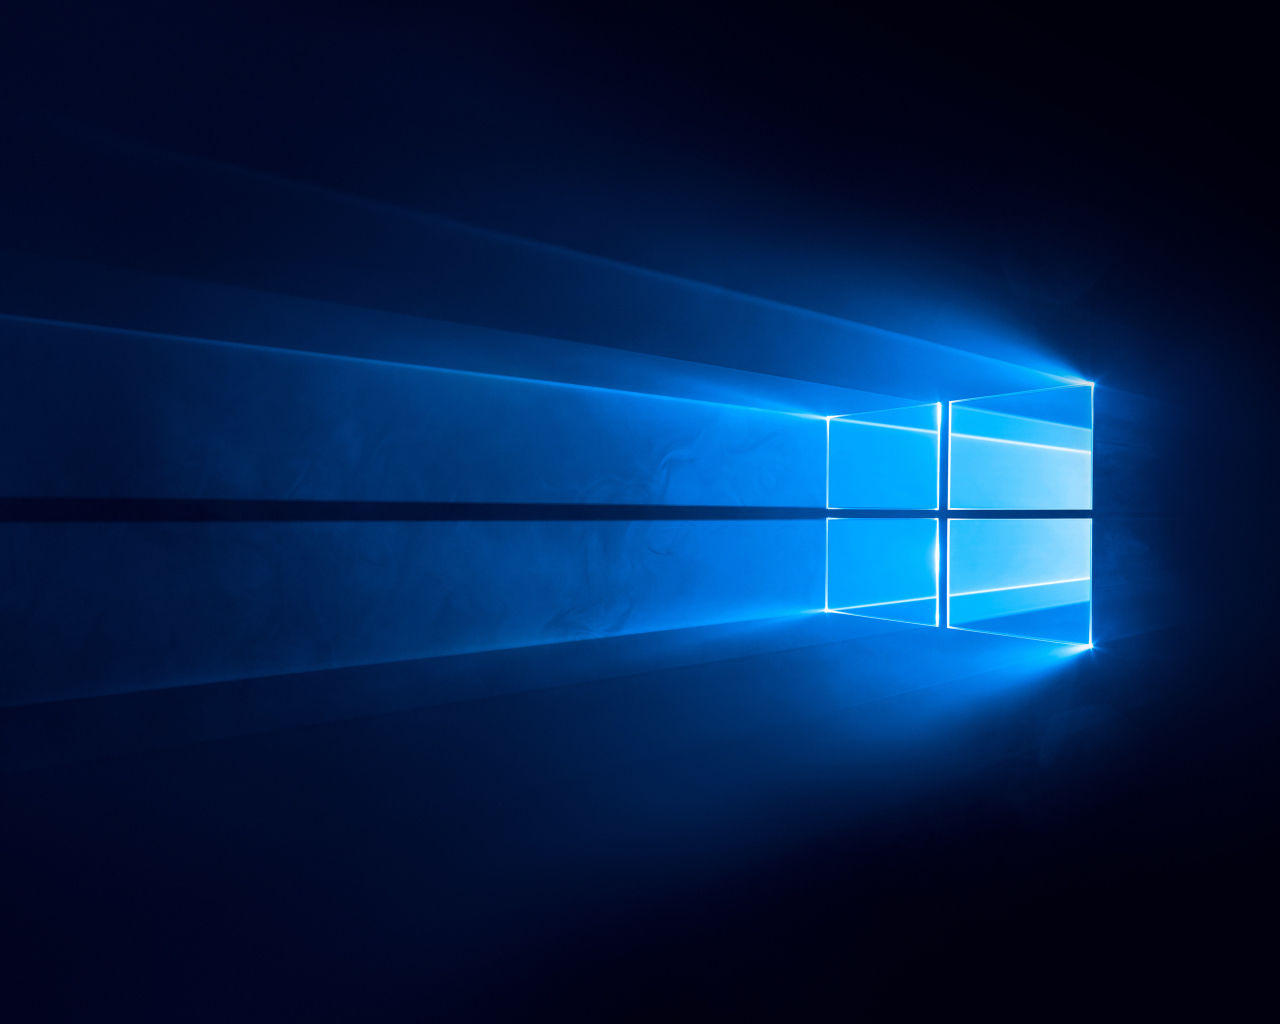 Логотип Windows 10 на синем фоне